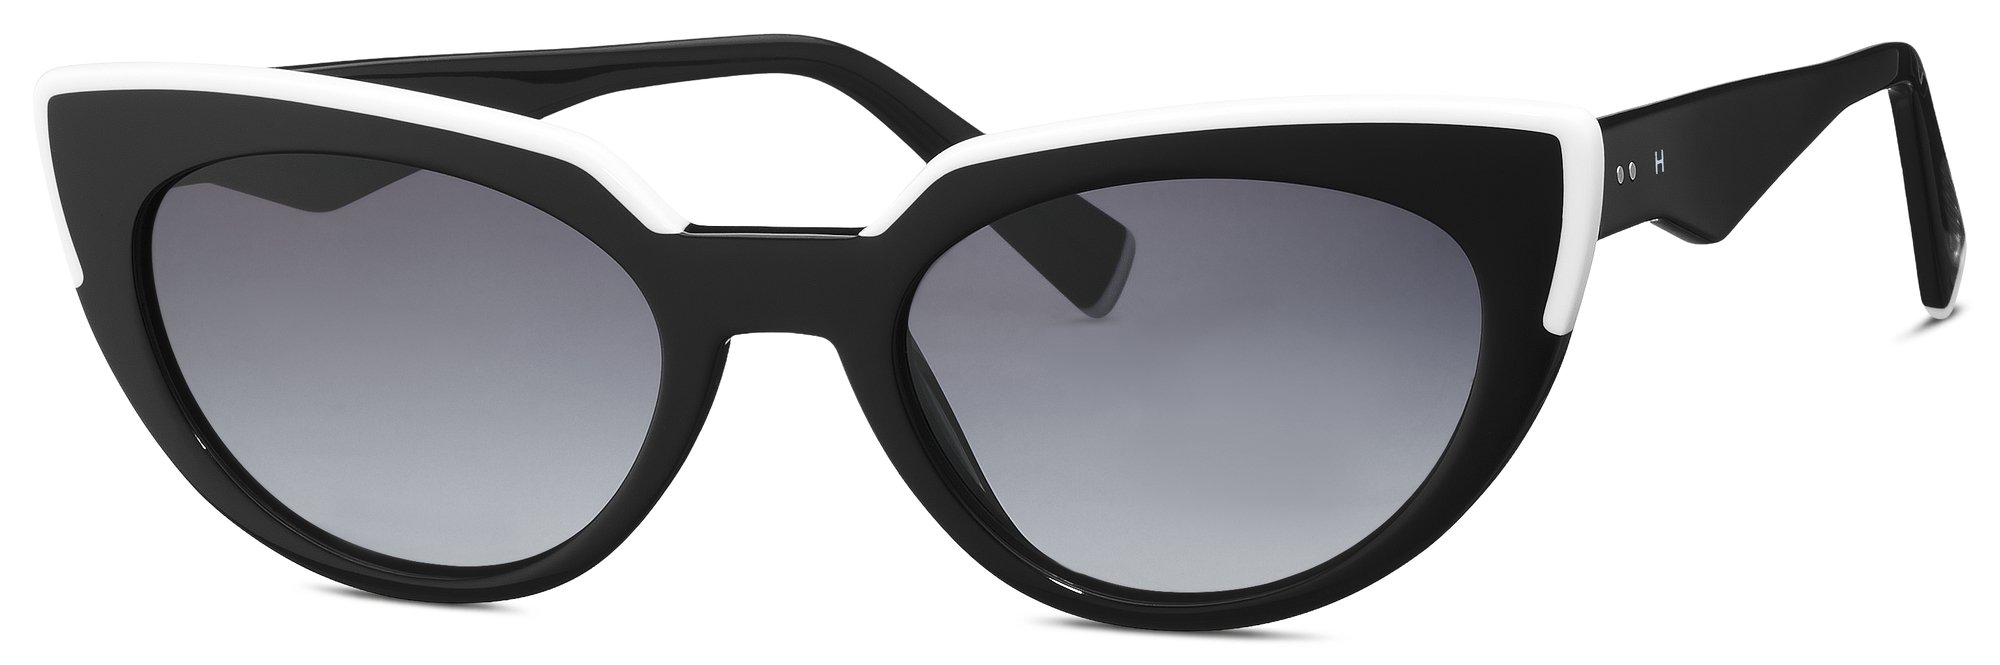 Das Bild zeigt die Sonnenbrille 588190 10 von der Marke Humphrey‘s in schwarz.